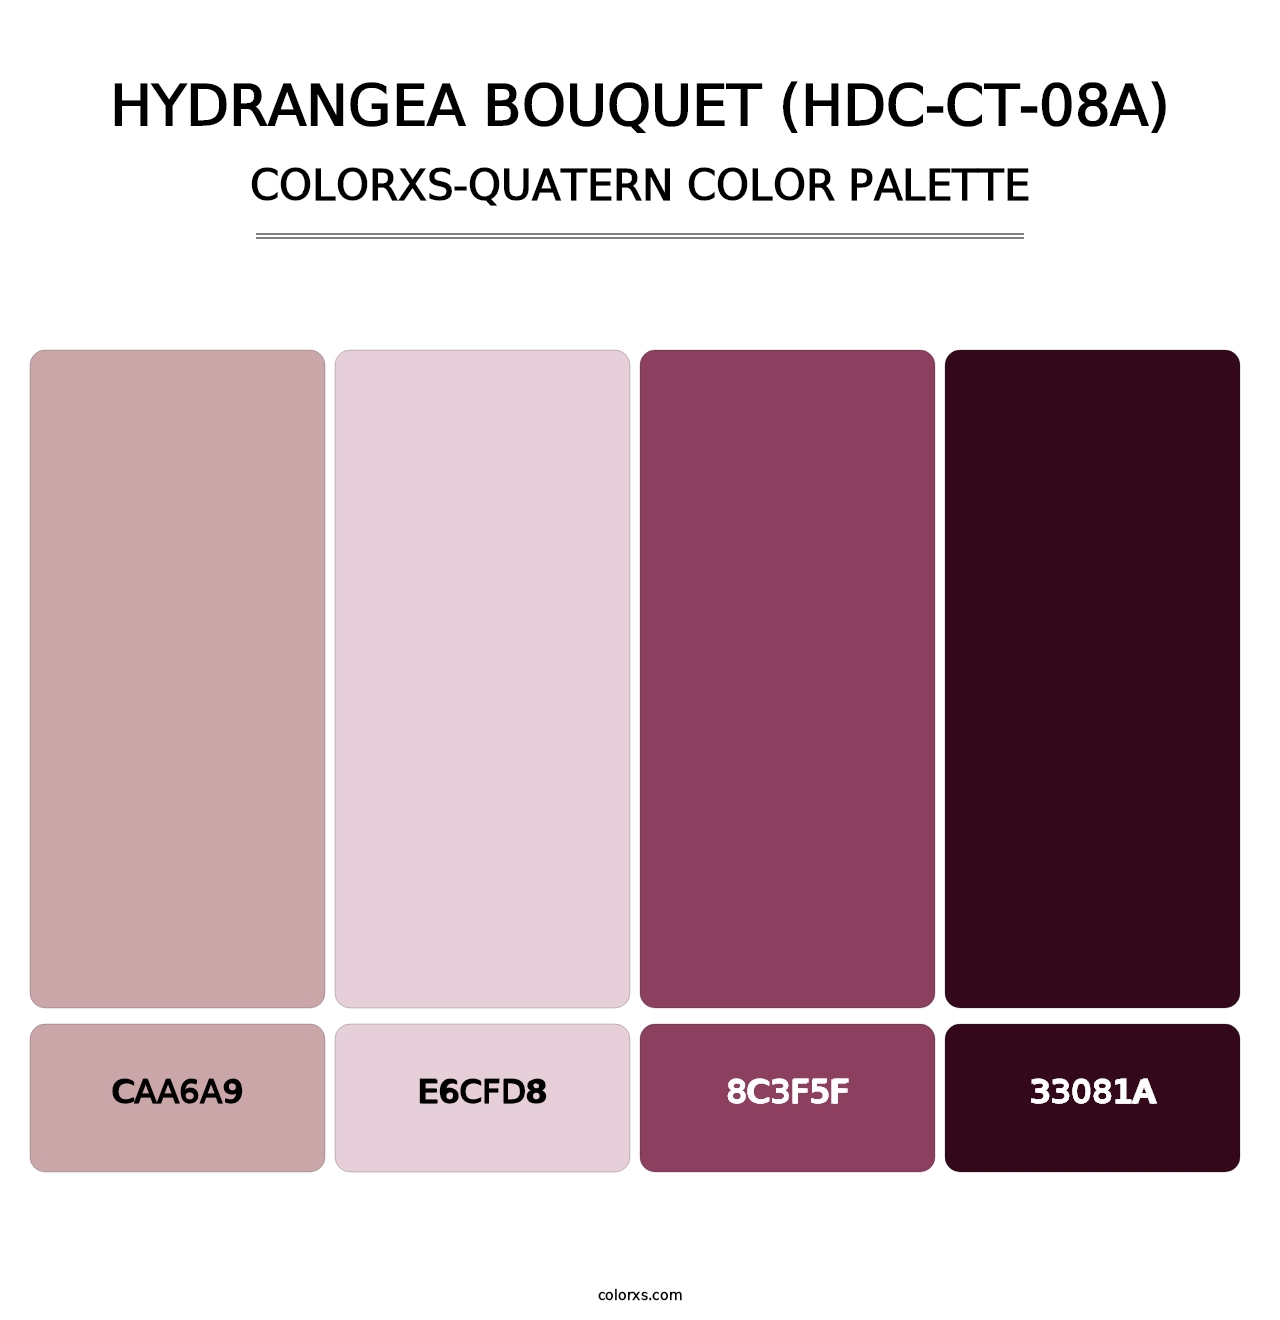 Hydrangea Bouquet (HDC-CT-08A) - Colorxs Quatern Palette